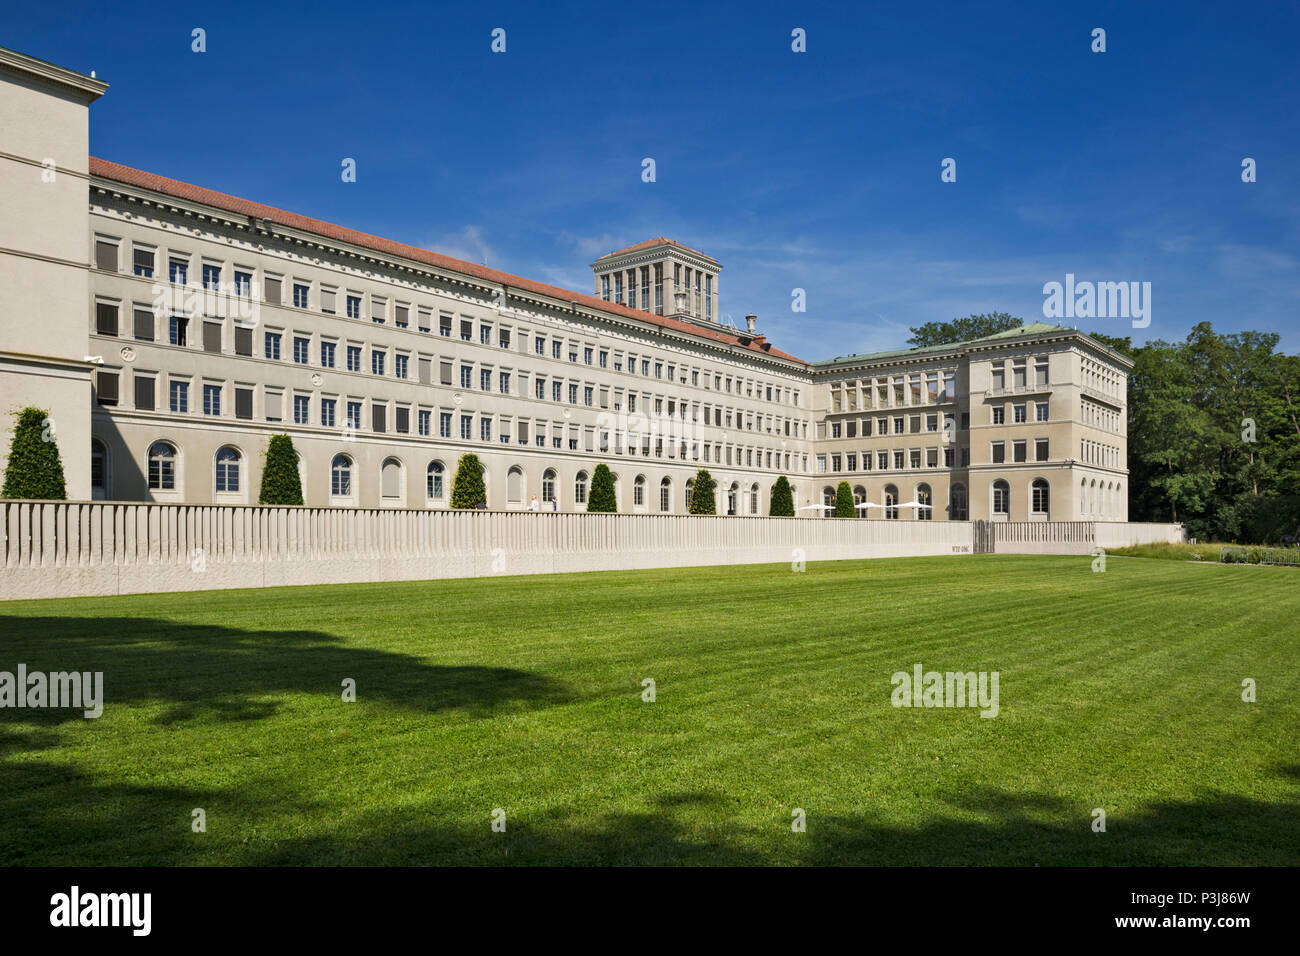 Genf, Schweiz - 10. Juni 2018: Centre William Rappard, Haus des World Trade OrganizationWorld der Welthandelsorganisation (WTO) Stockfoto